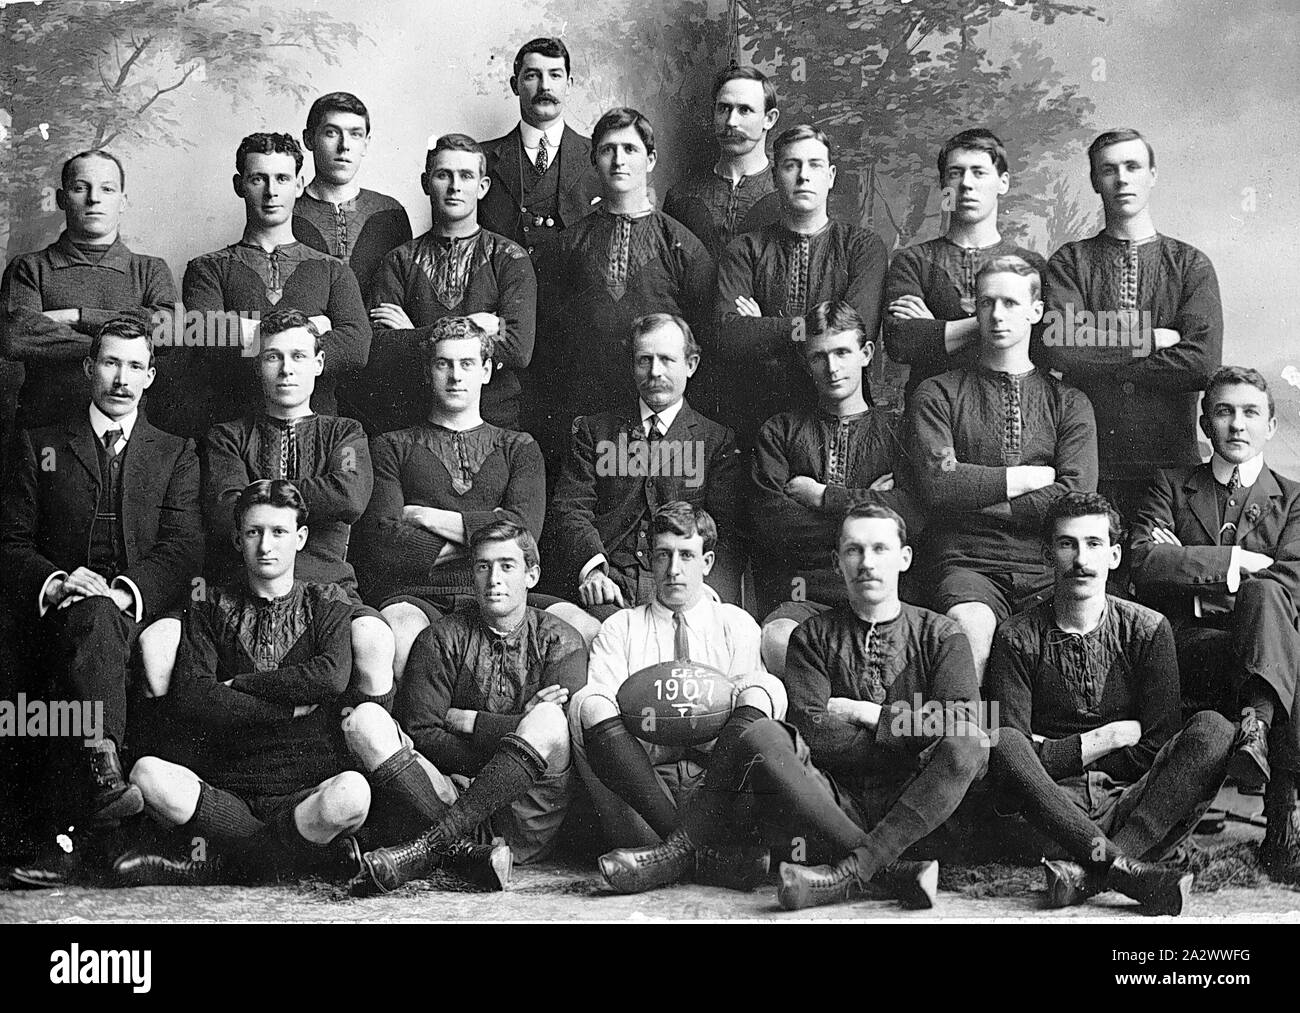 Negativo - Eden Club di Calcio, Auckland, 1907, l'Eden Club di Calcio. Essi sono stati i premiers nell'Australian Football League di Auckland nel 1907. Questo campionato esisteva già dal 1904 fino a quando la guerra mondiale I Foto Stock